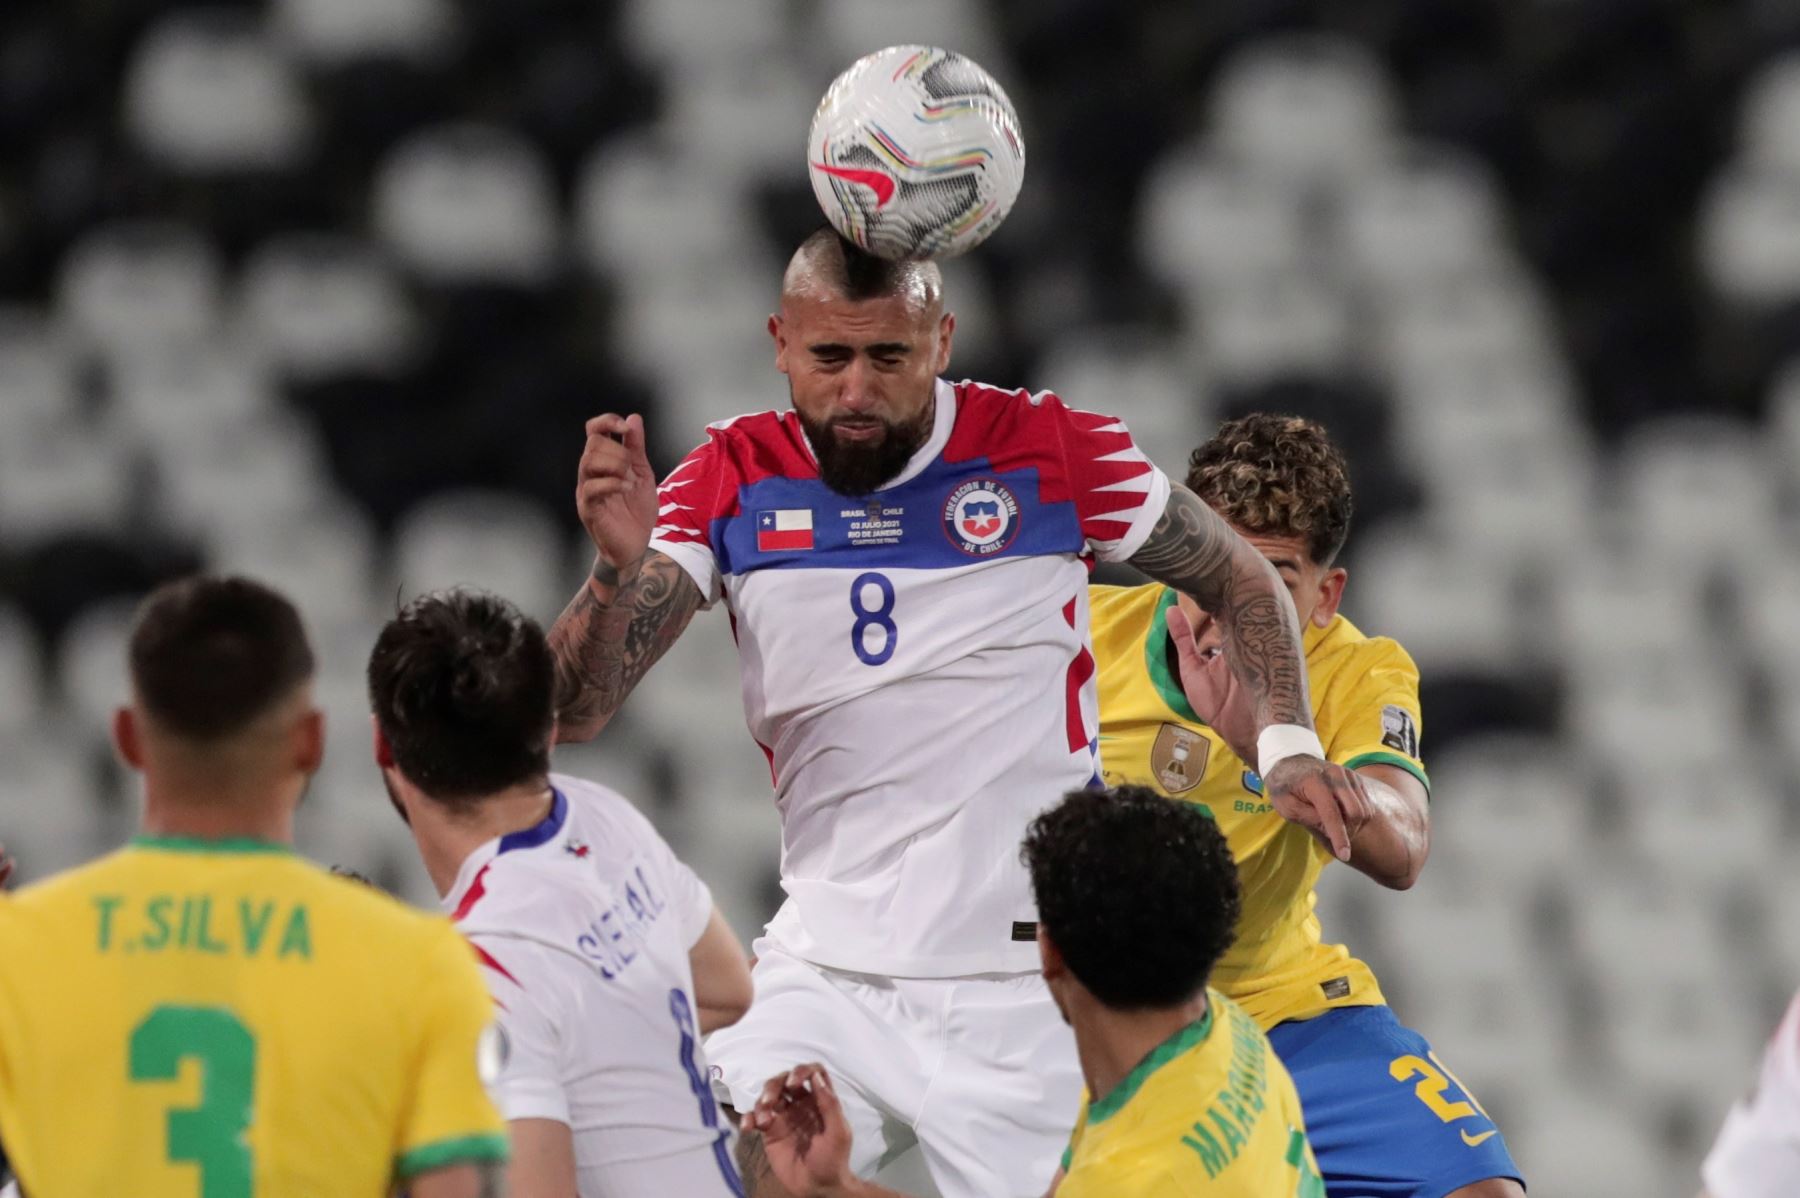 Arturo Vidal de Chile cabecea el balón durante partido por los cuartos de final de la Copa América, en el estadio Nilton Santos en Río de Janeiro, Brasil. Foto: EFE